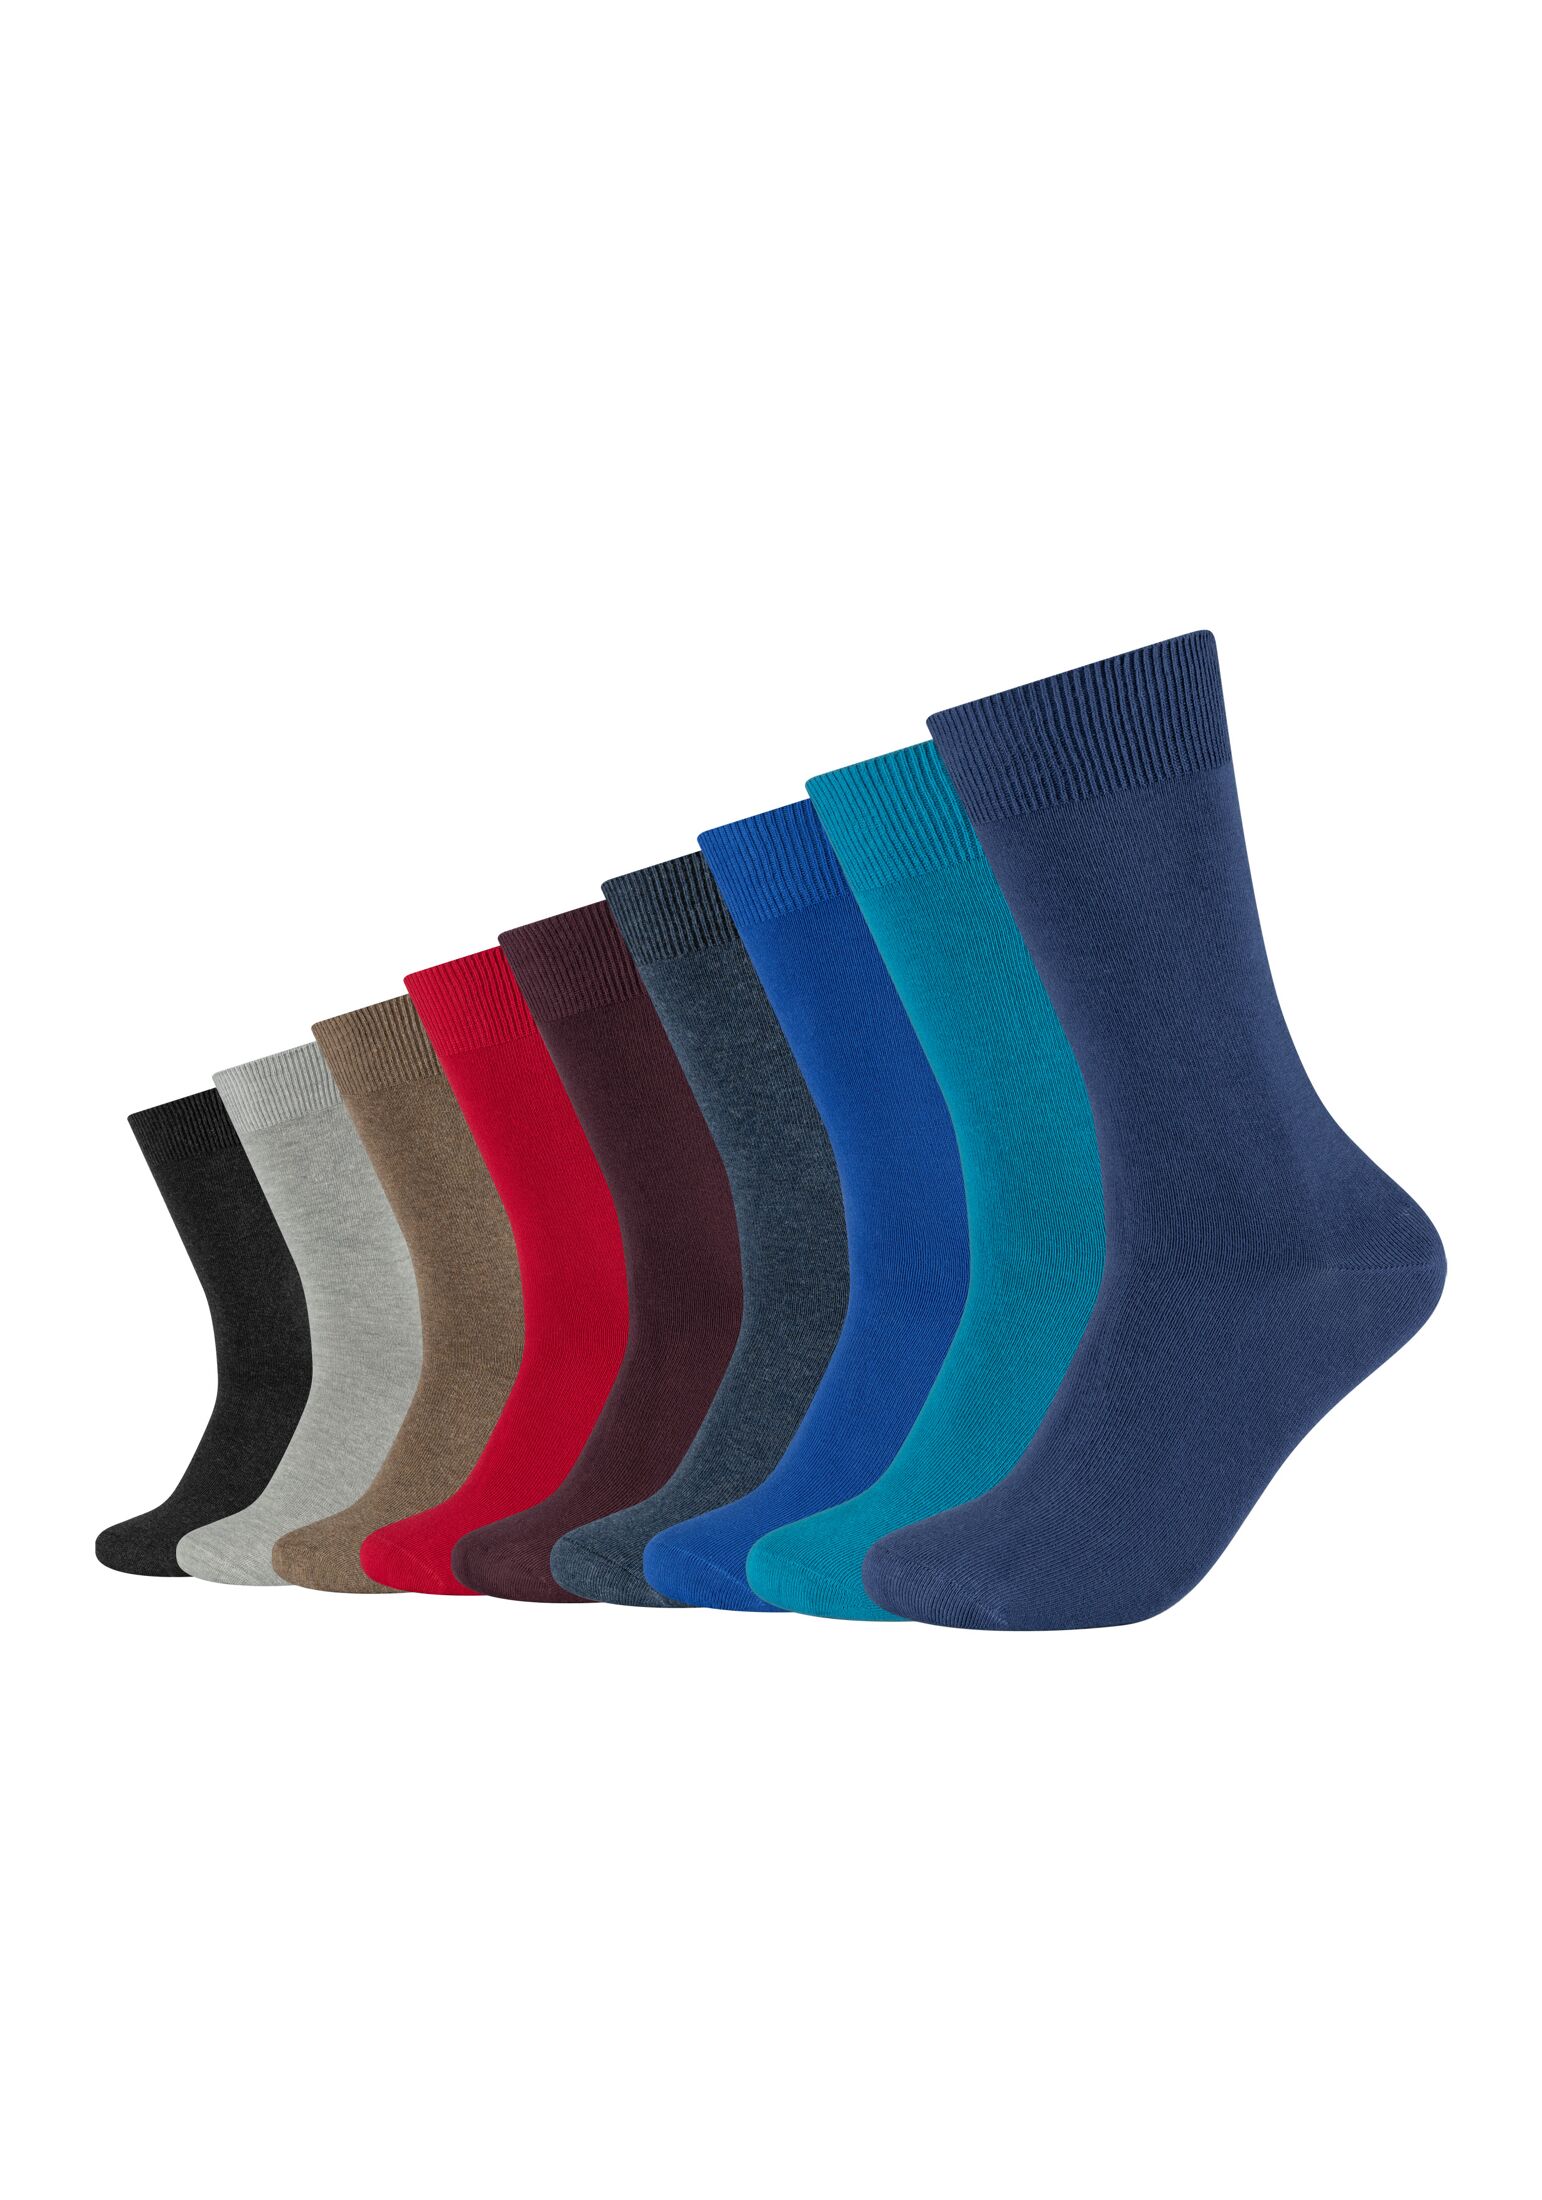 Camano Herren 9106 Socken, Blau (Jeans Mix 5703), (Herstellergröße: 35/38) (9er Pack)